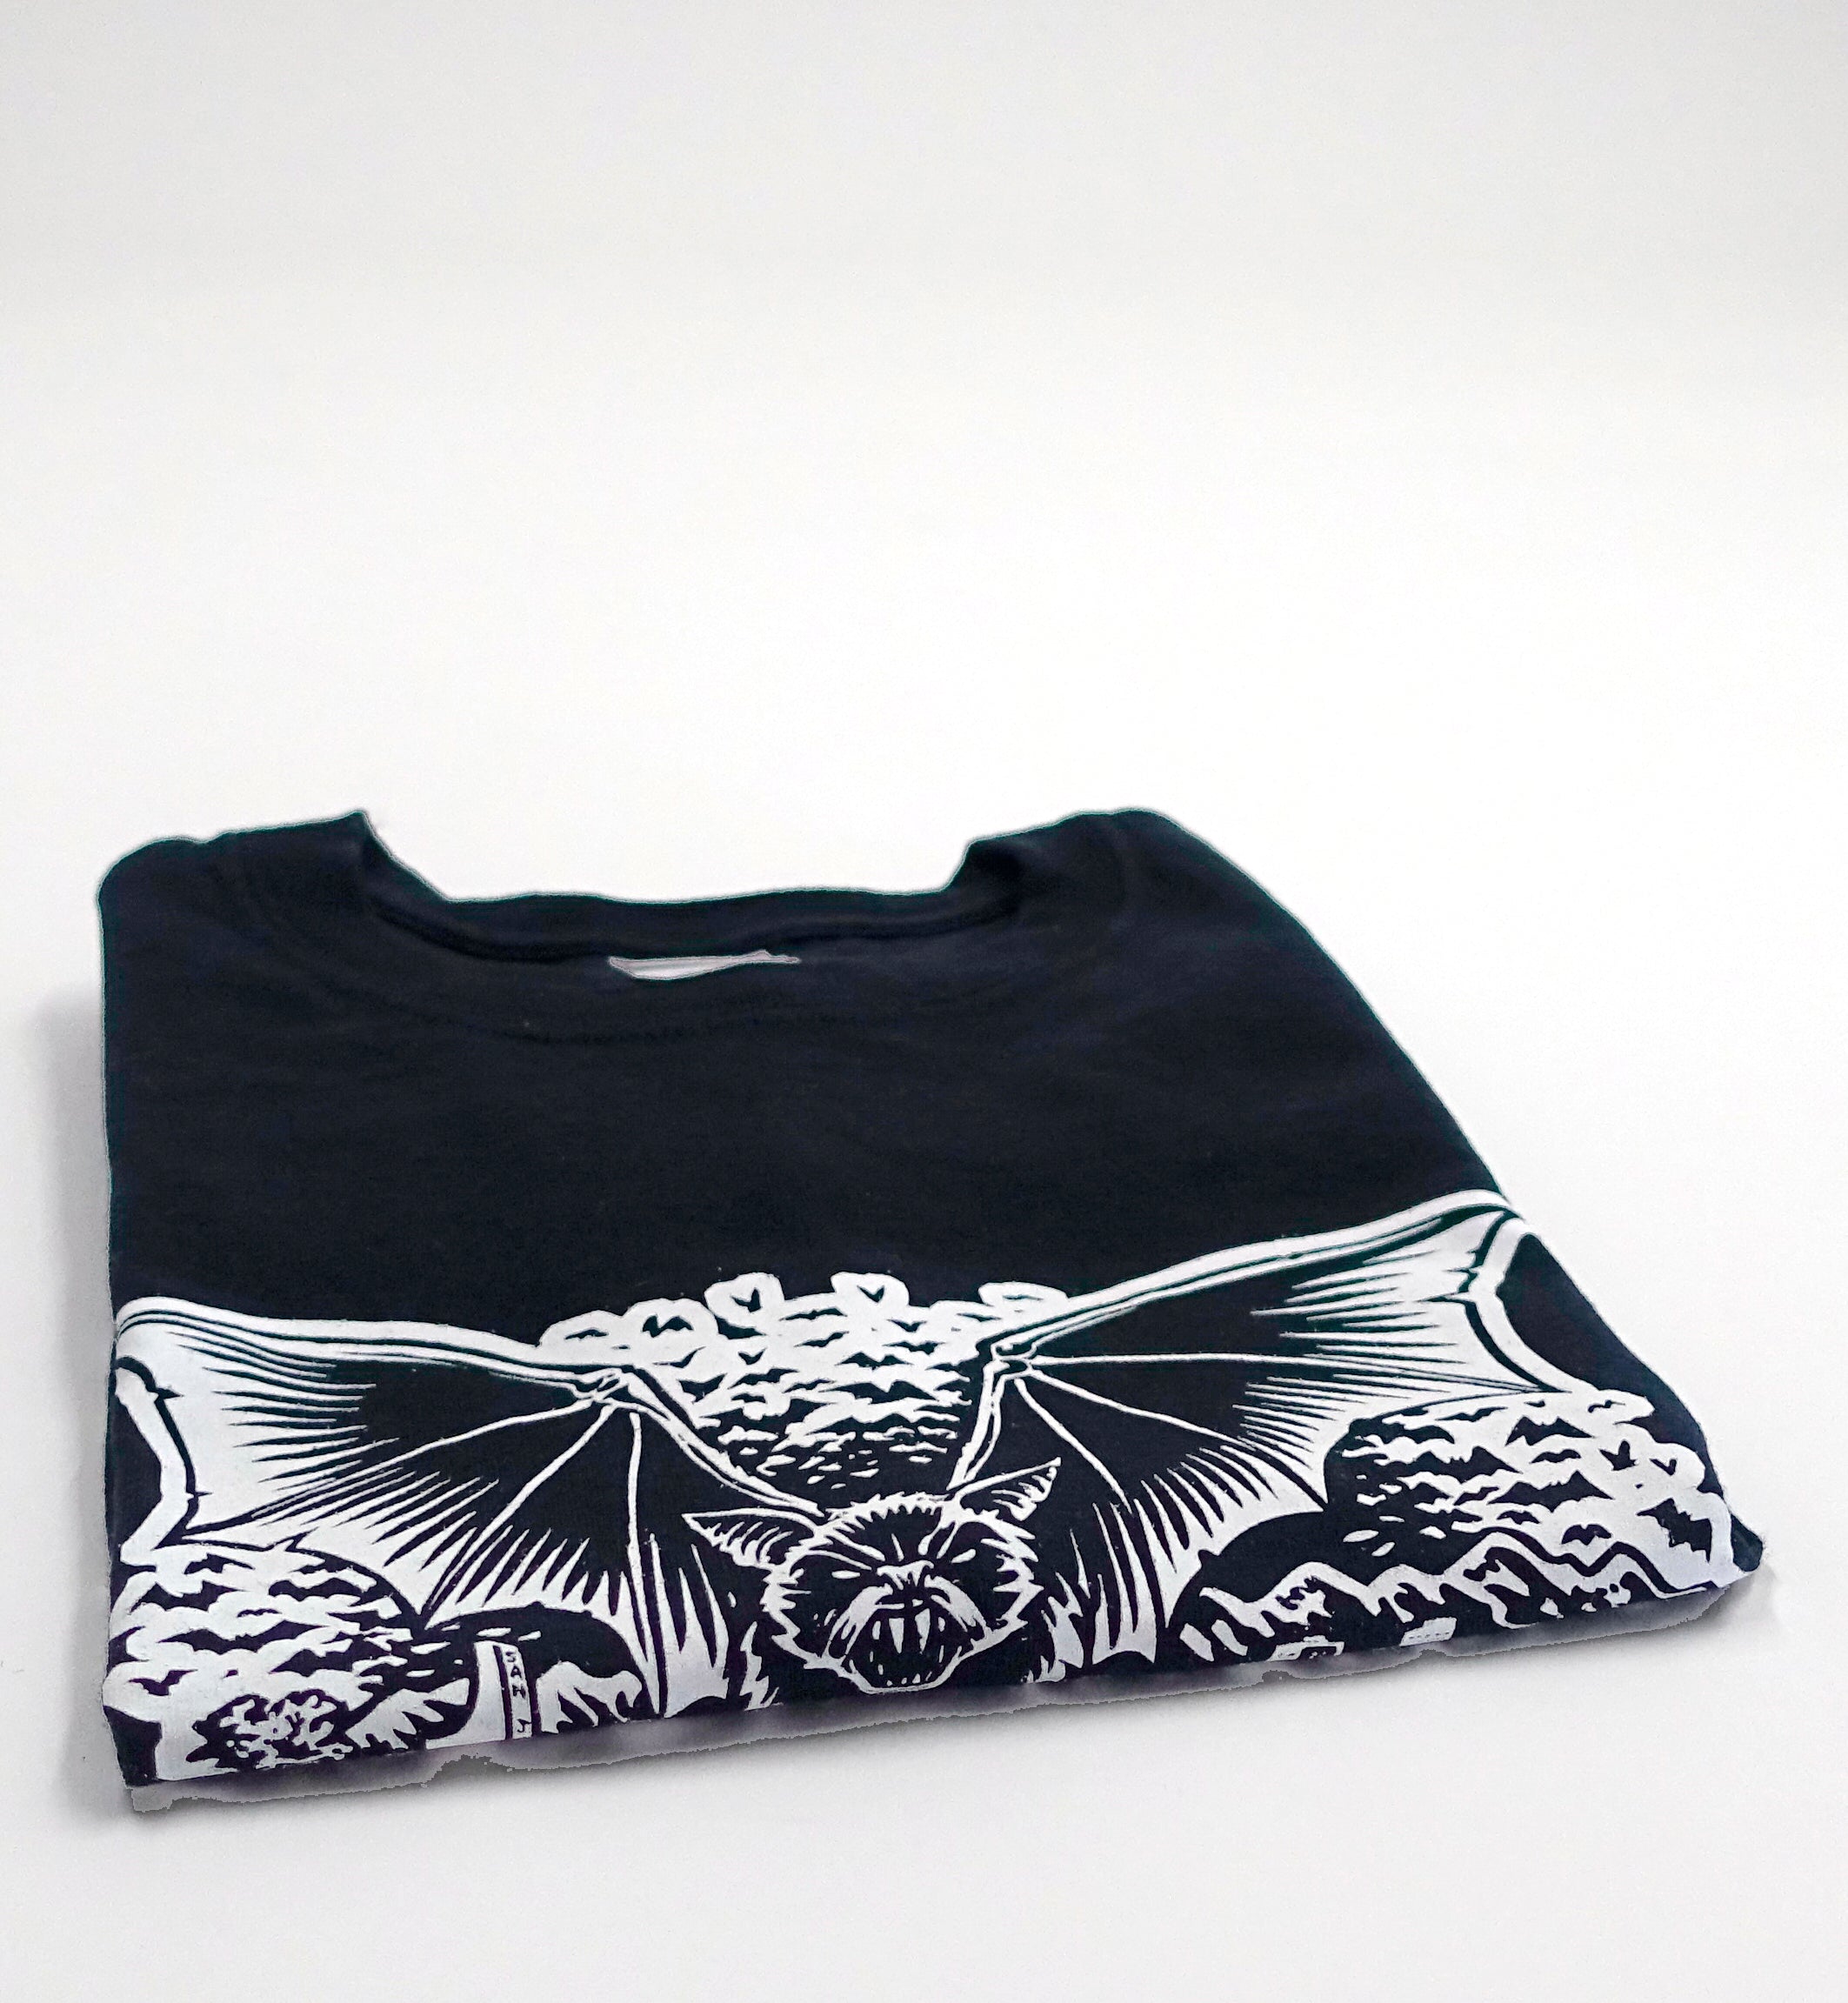 the Faction ‎– Bat / Jim Phillips Design 2014 Tour Shirt Size Large